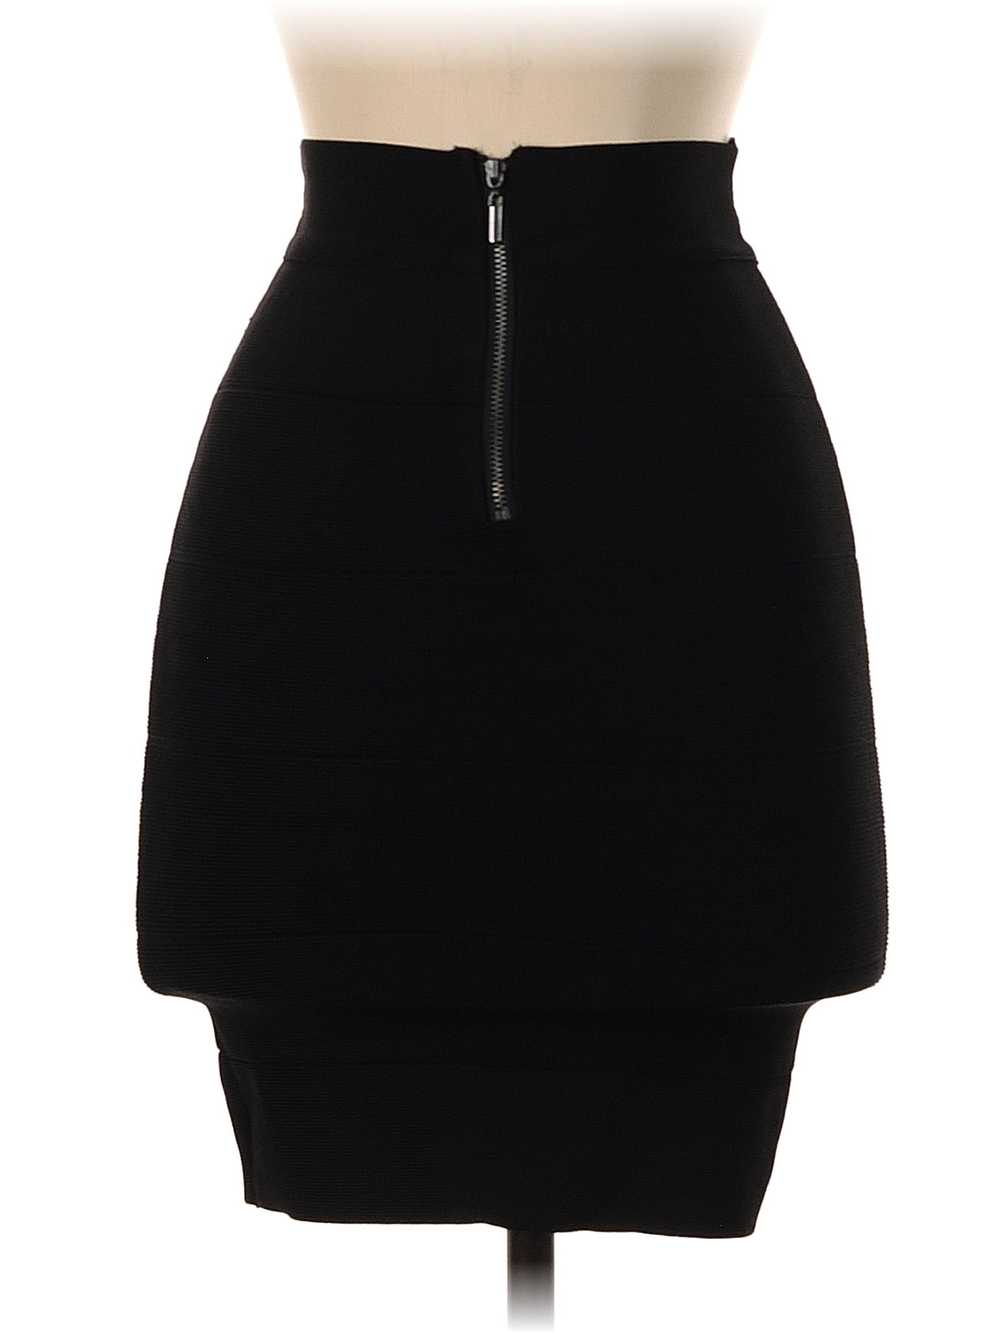 Bebe Women Black Casual Skirt S - image 2